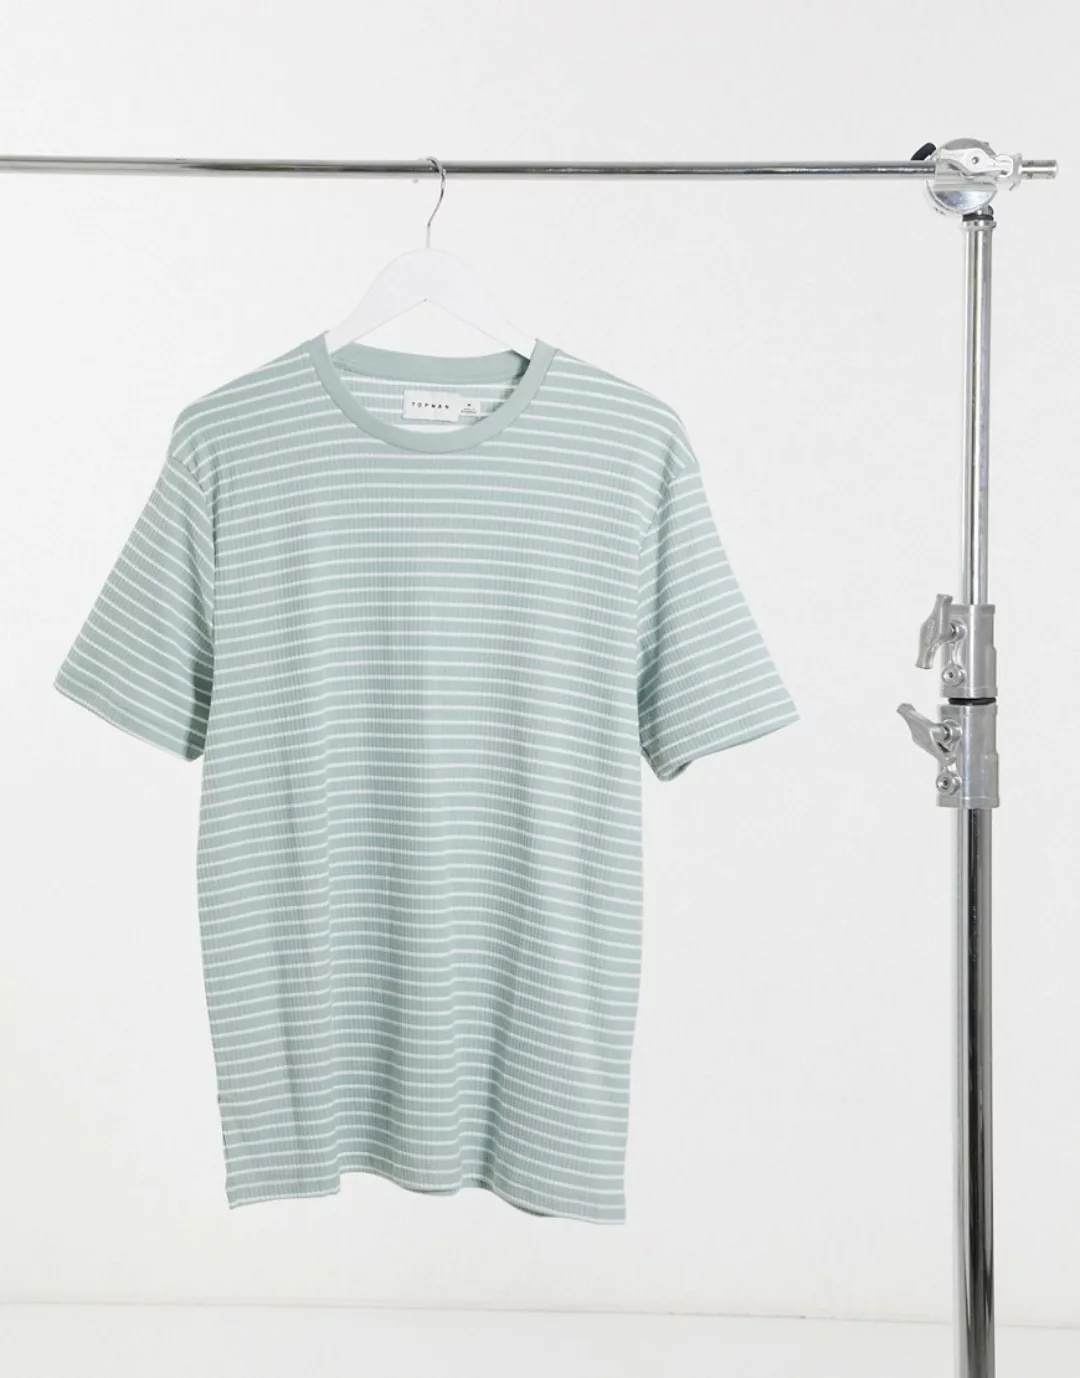 Topman – Gestreiftes T-Shirt in Salbeigrün und Weiß günstig online kaufen